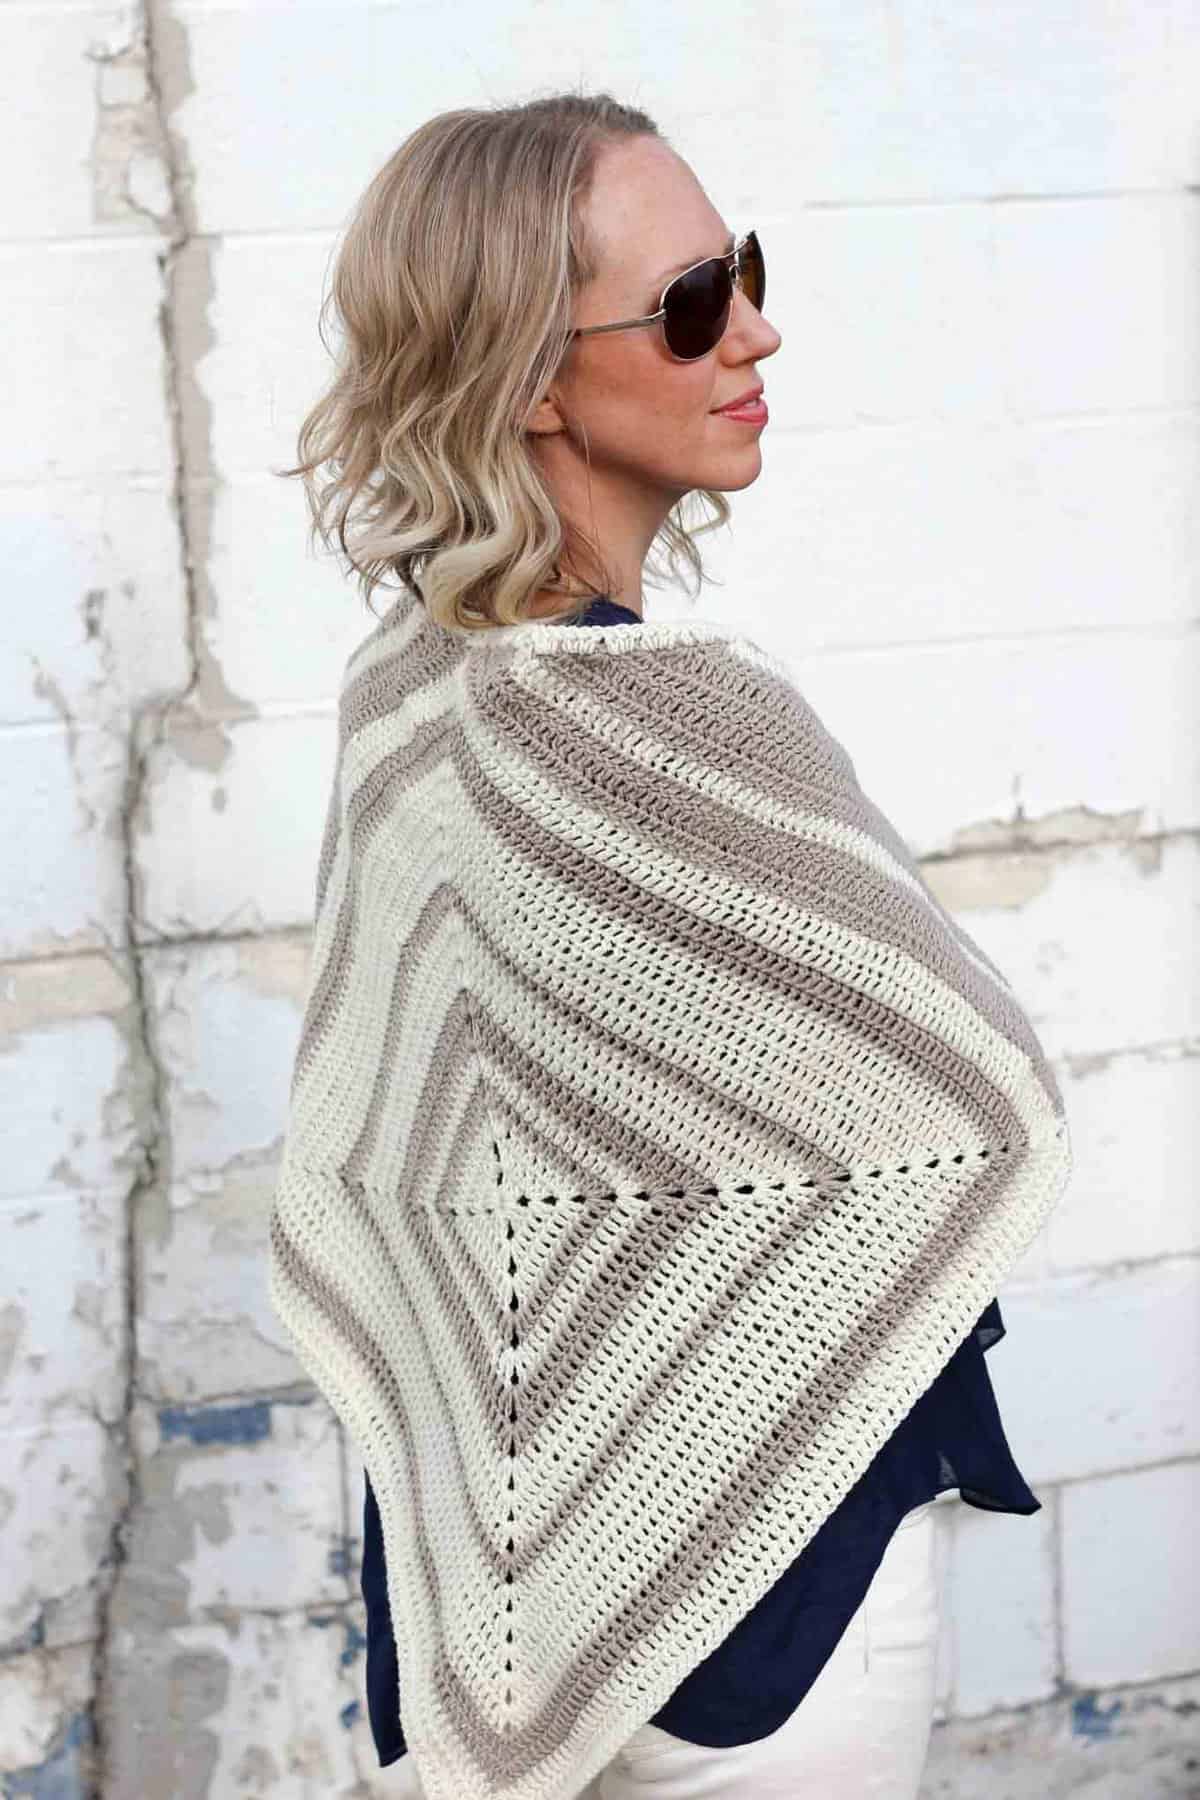 Crochet can be modern! Easy geometric crochet pattern to make a lightweight summer wrap. Free crochet pattern!